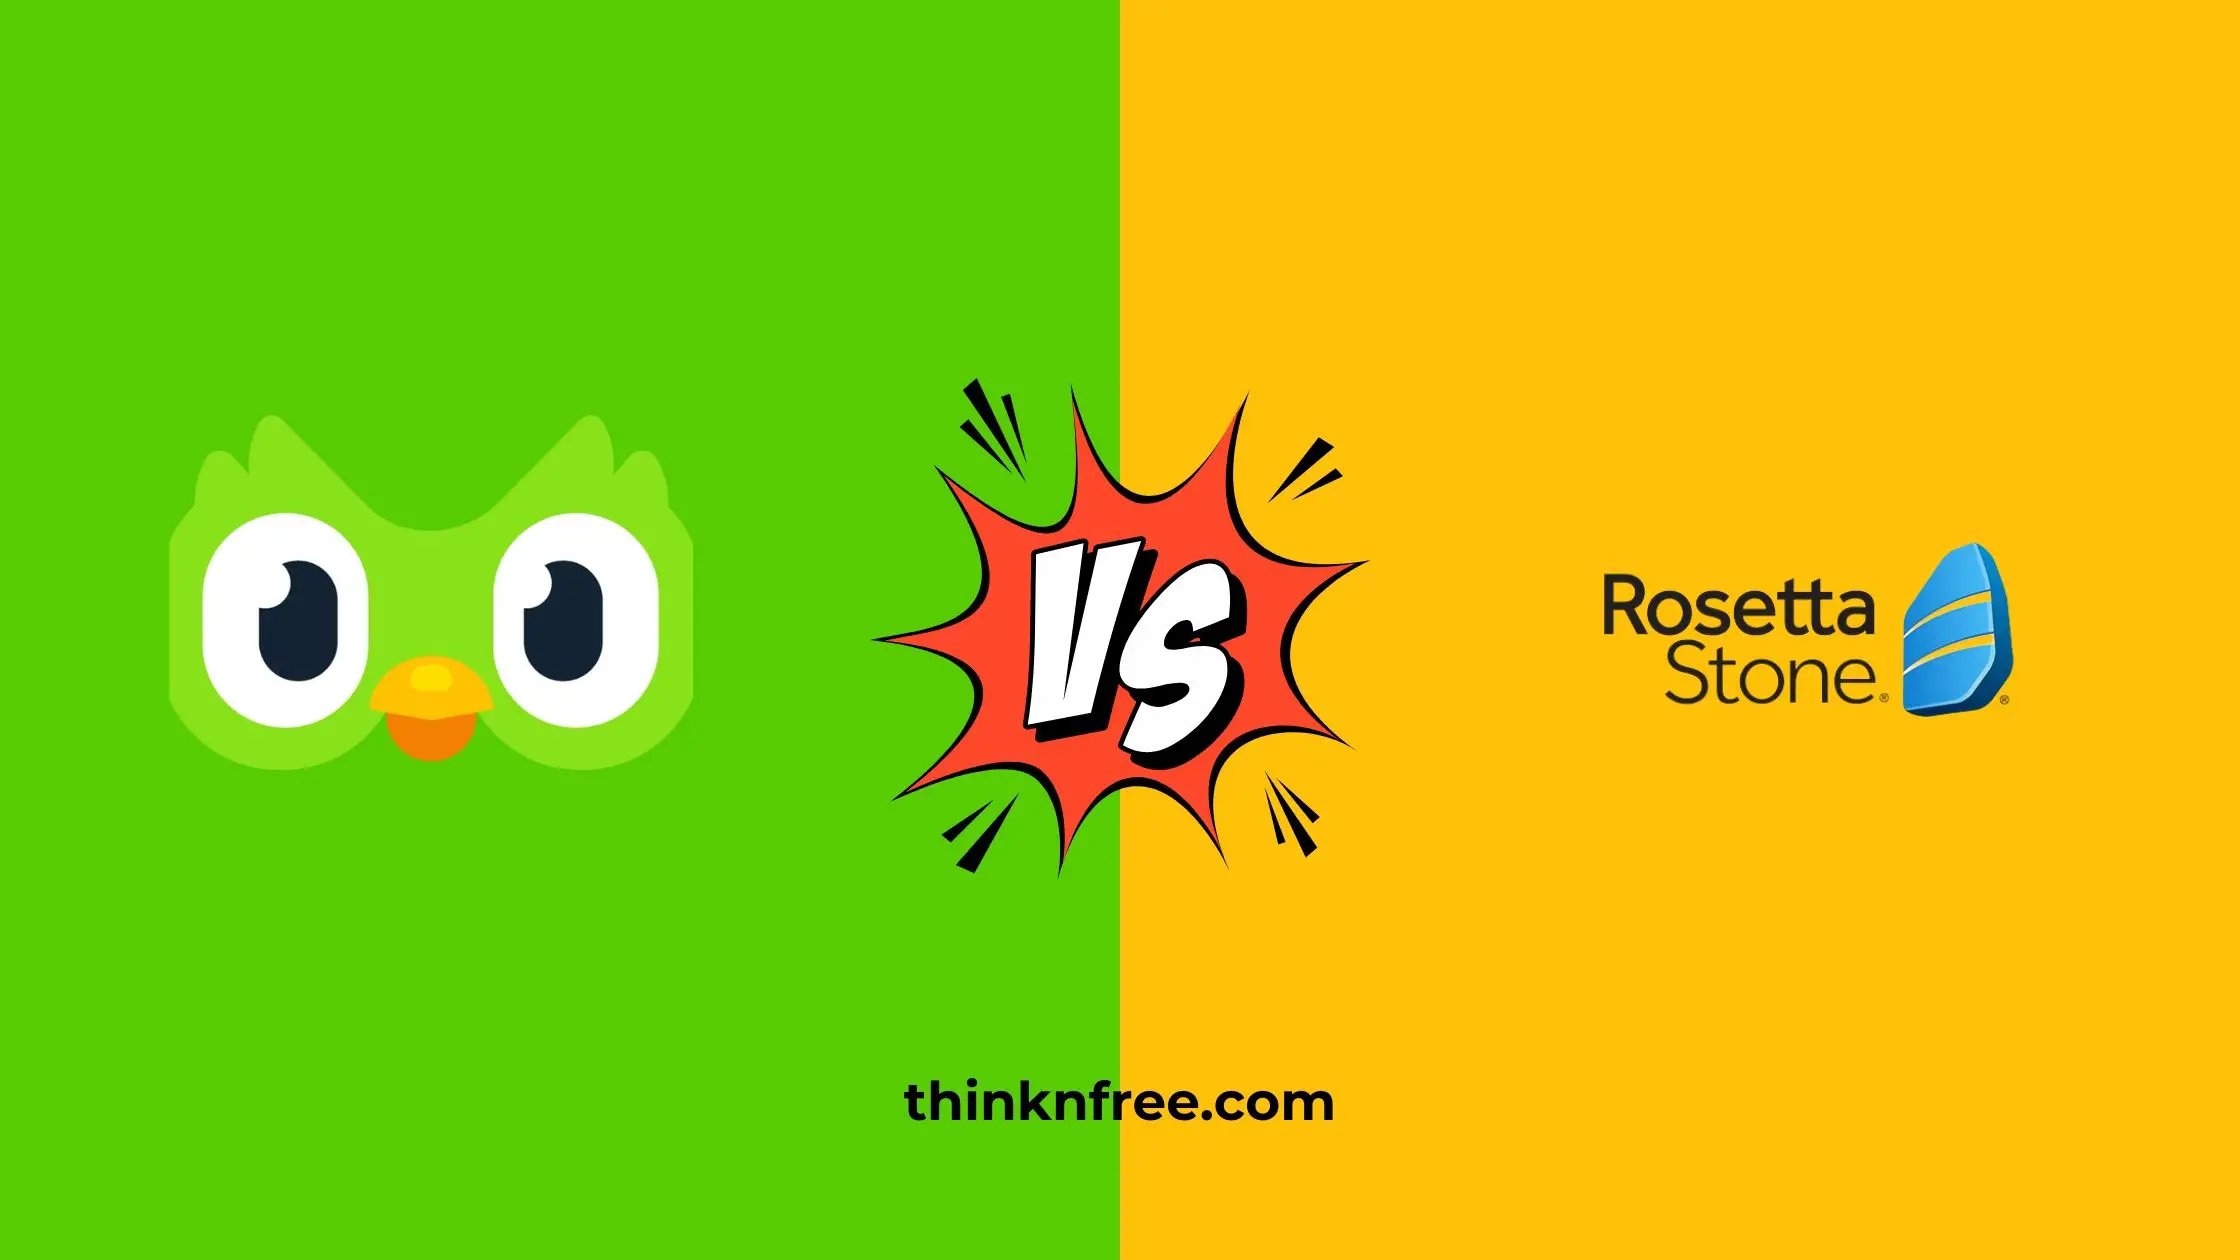 Duolingo vs Rosetta stone